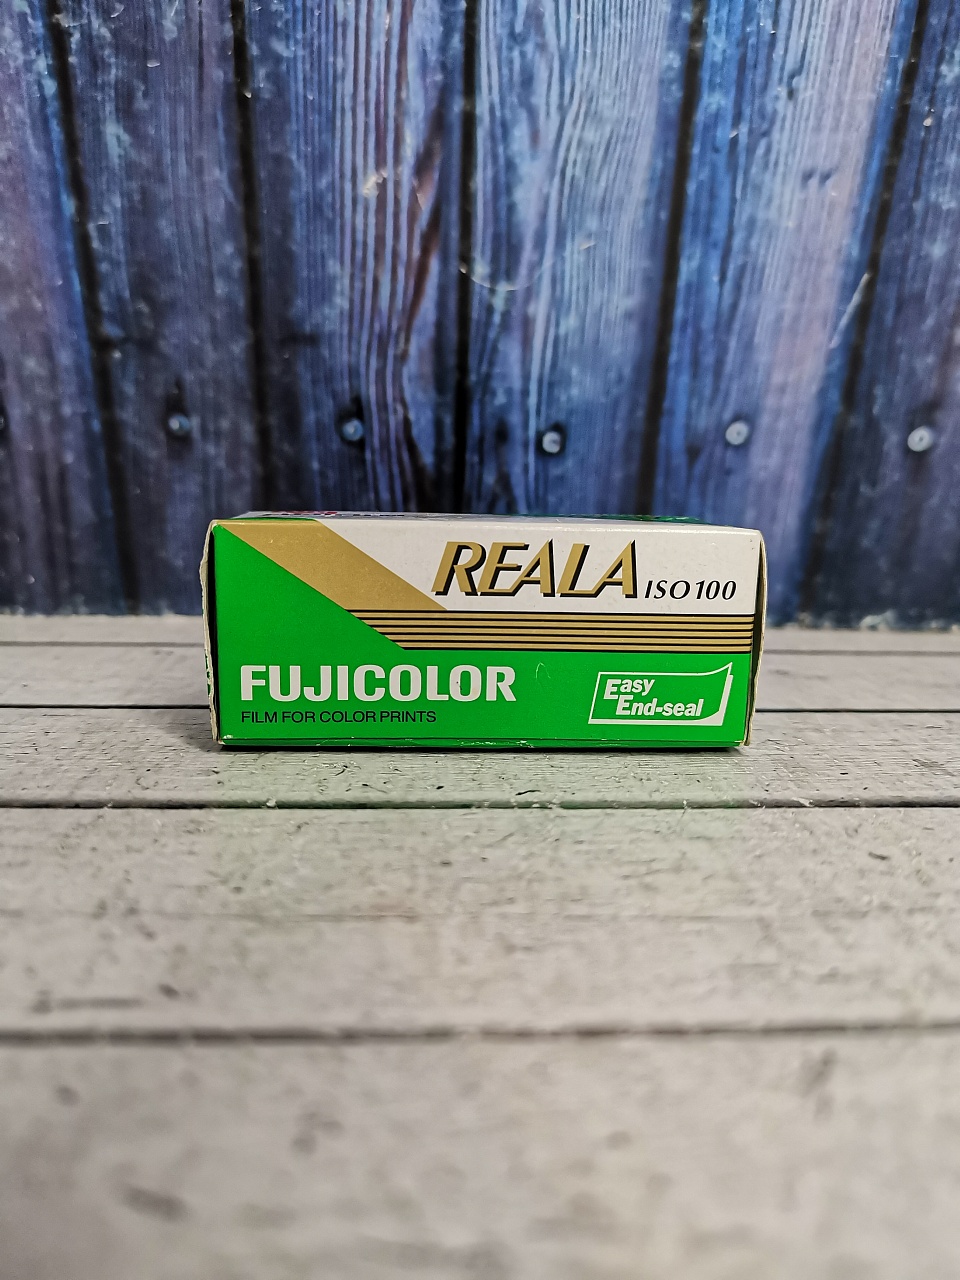 Fujicolor reala 100/120 (просрочка) фото №1